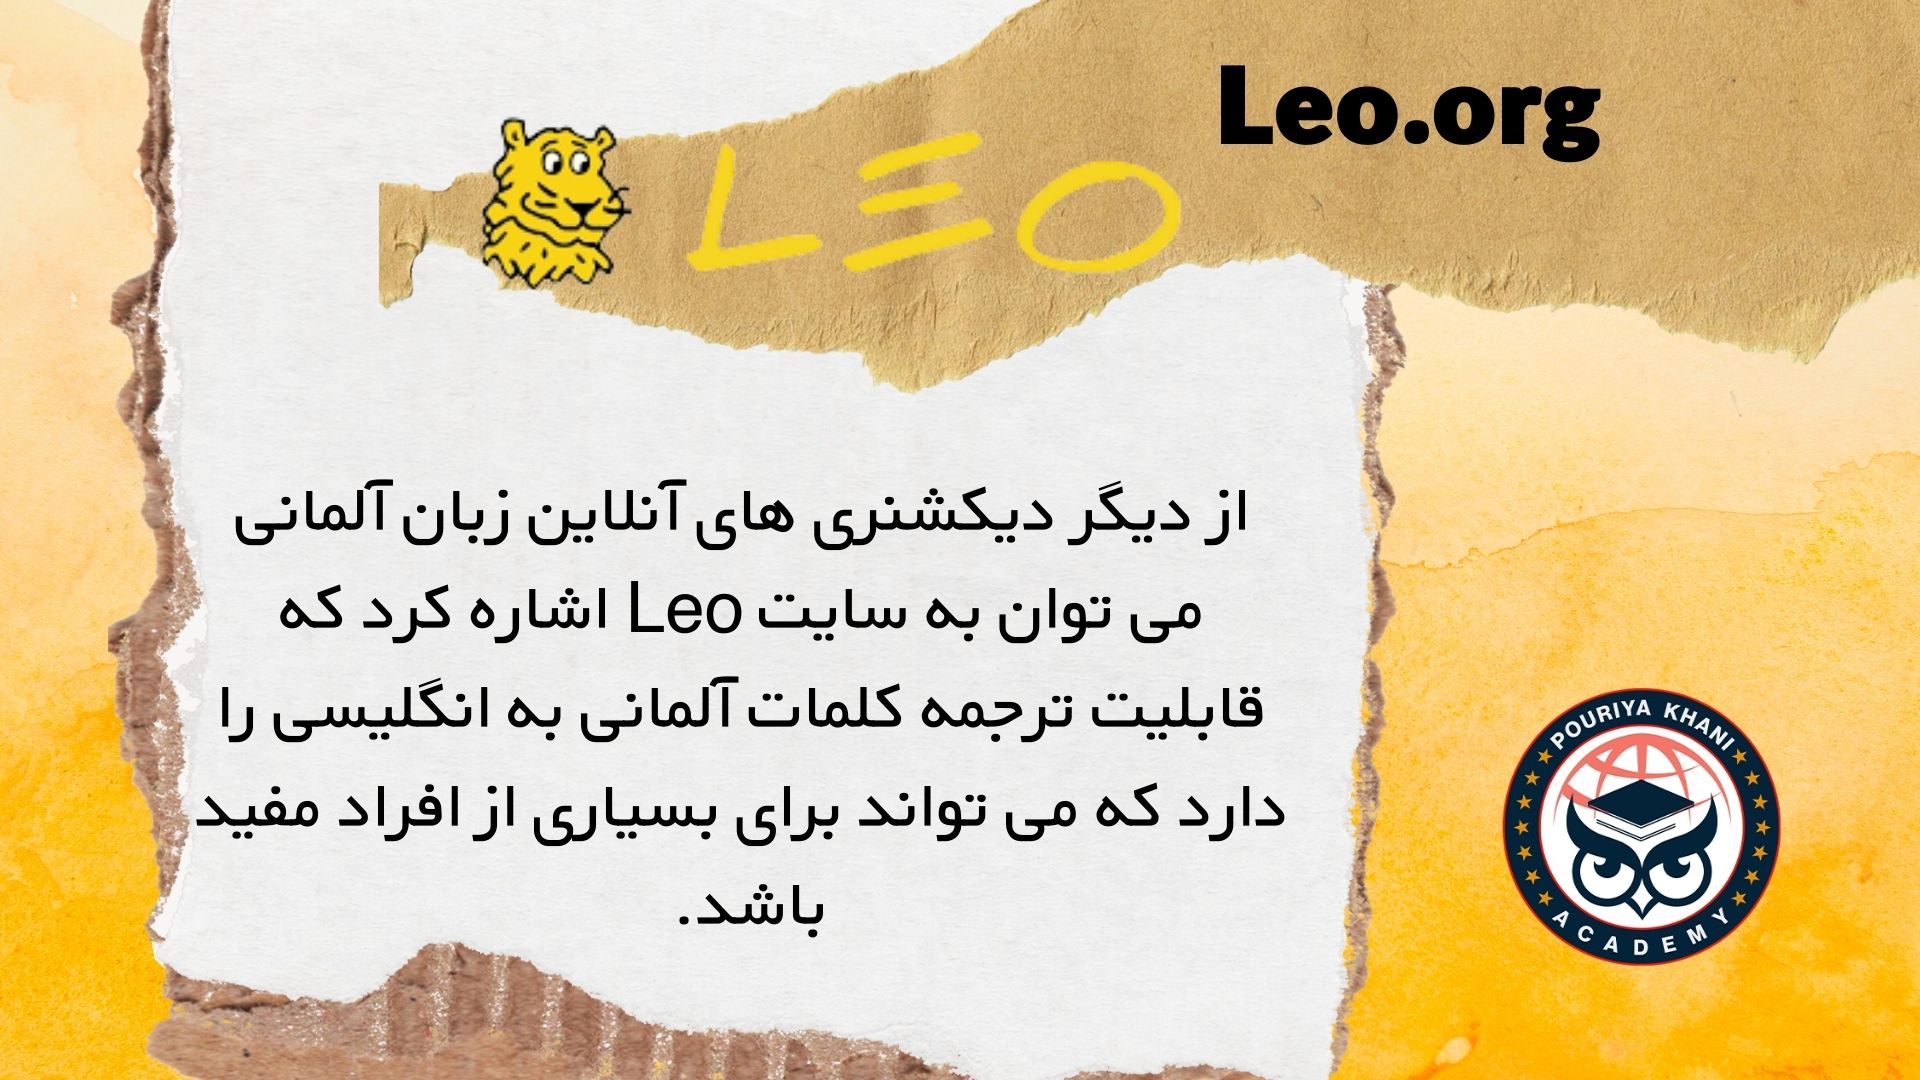 Leo.org